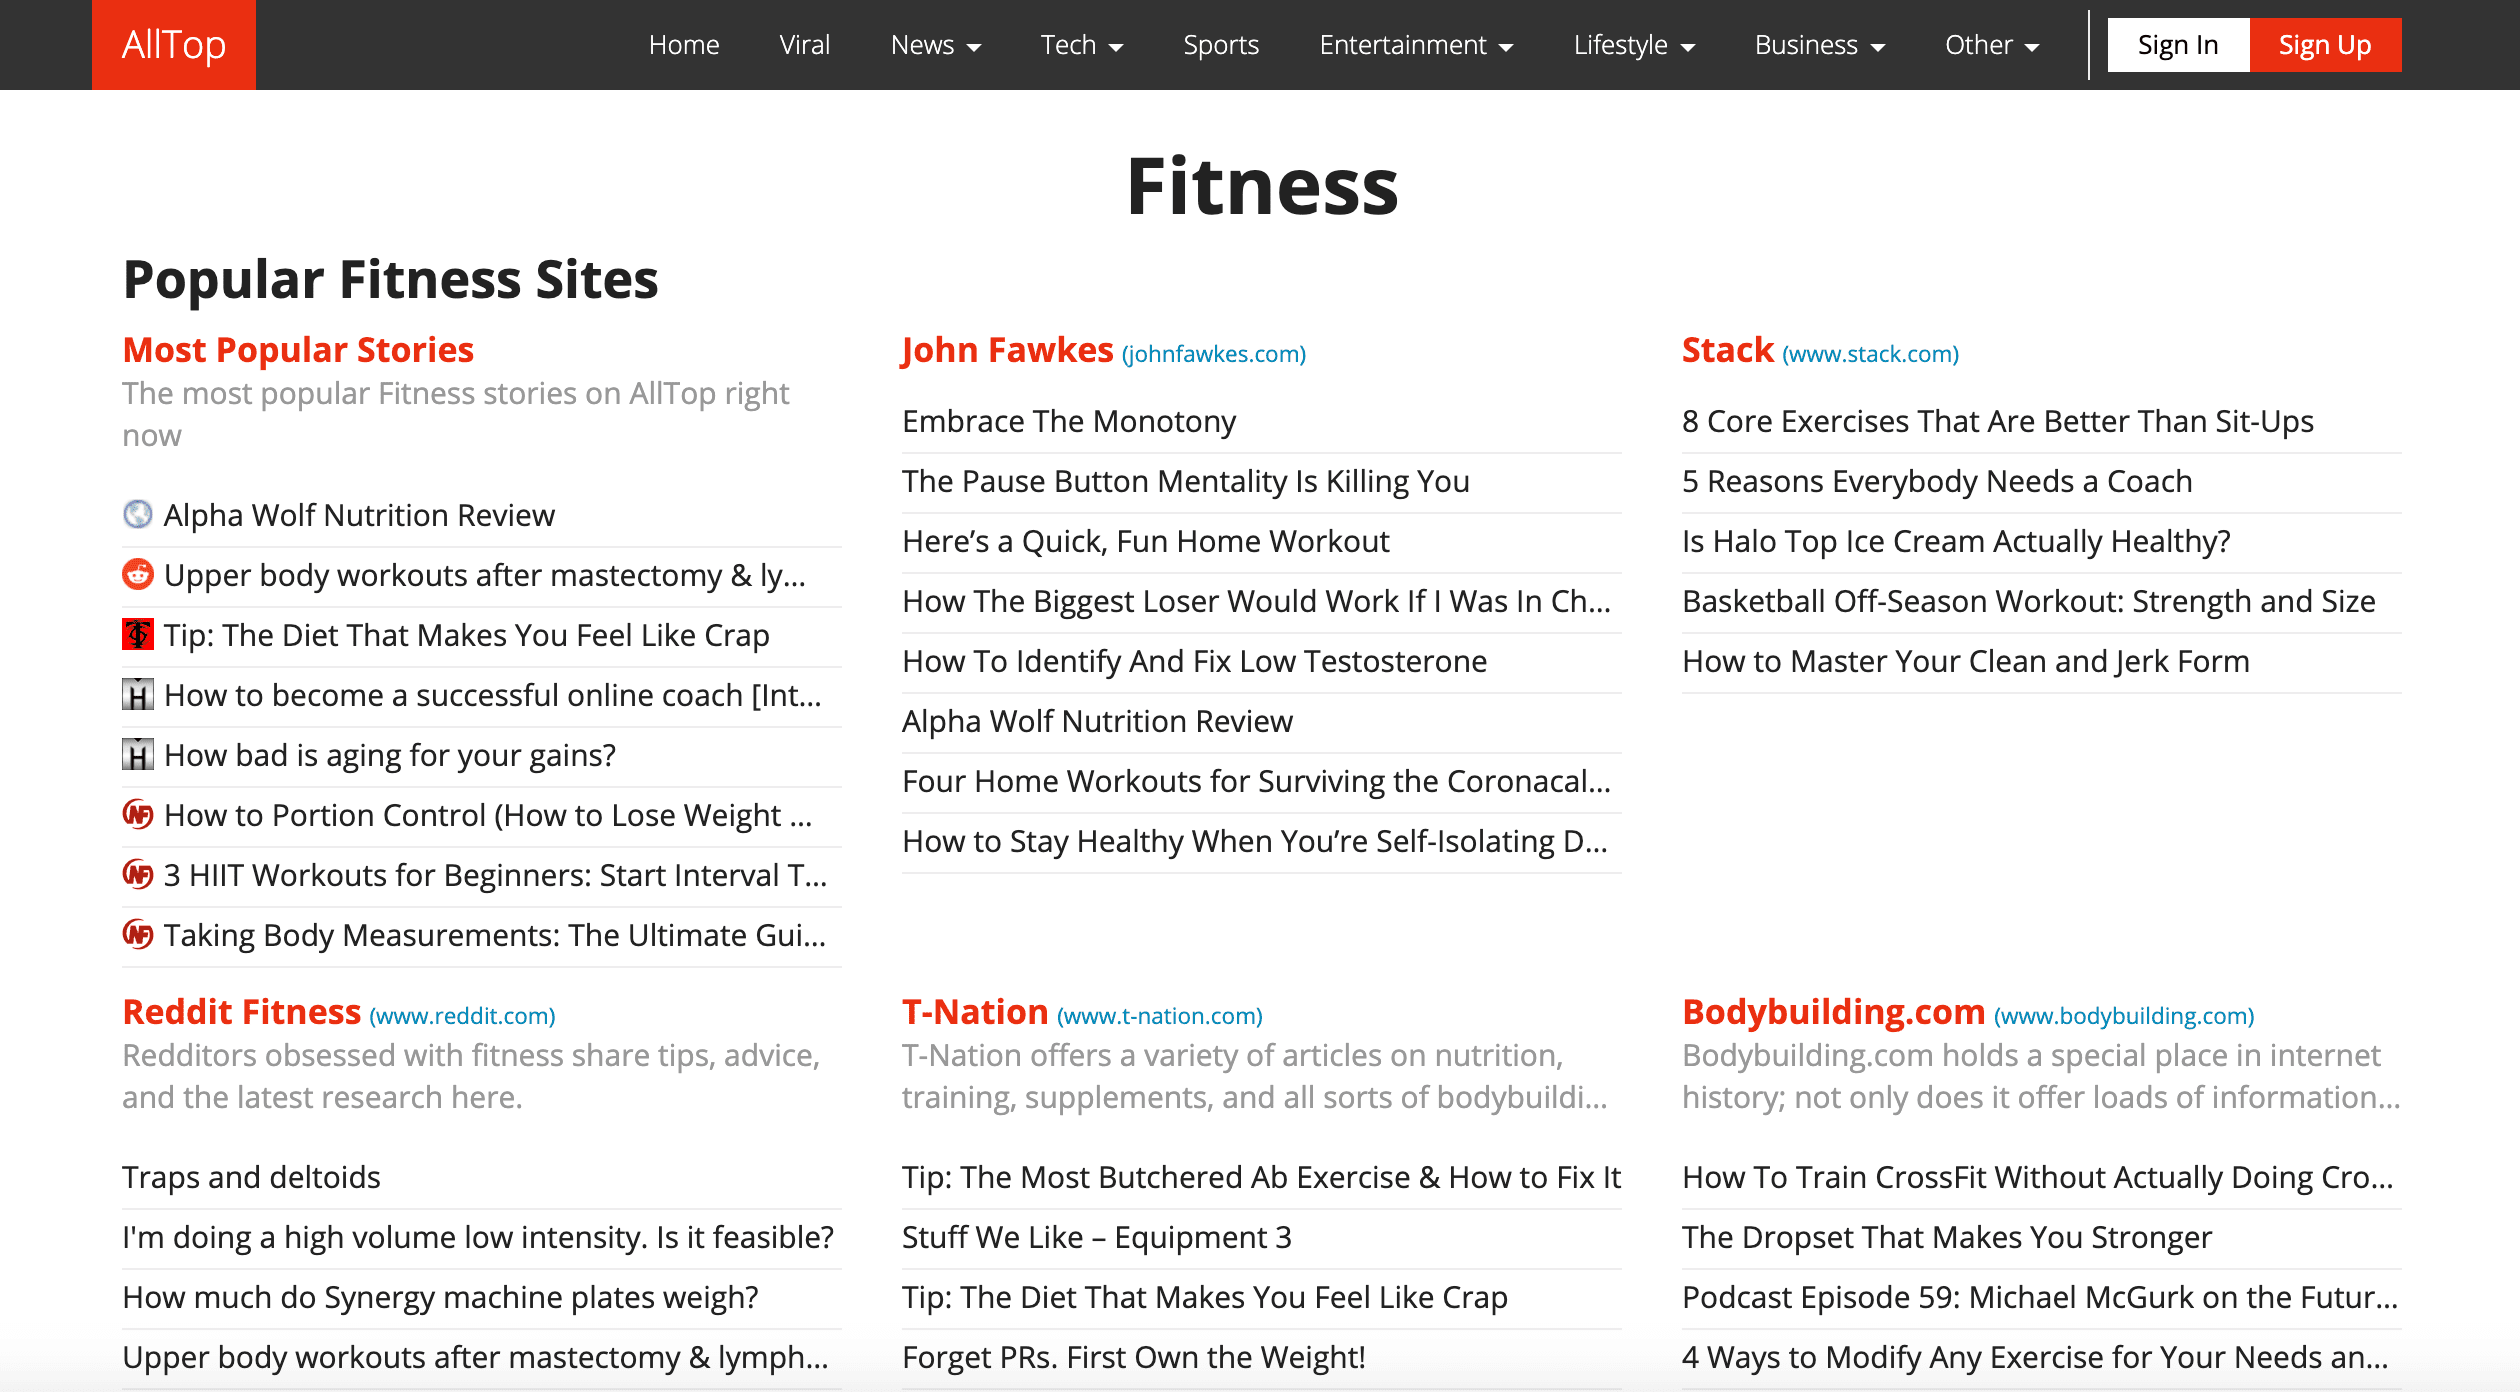 Fitness blogs on AllTop